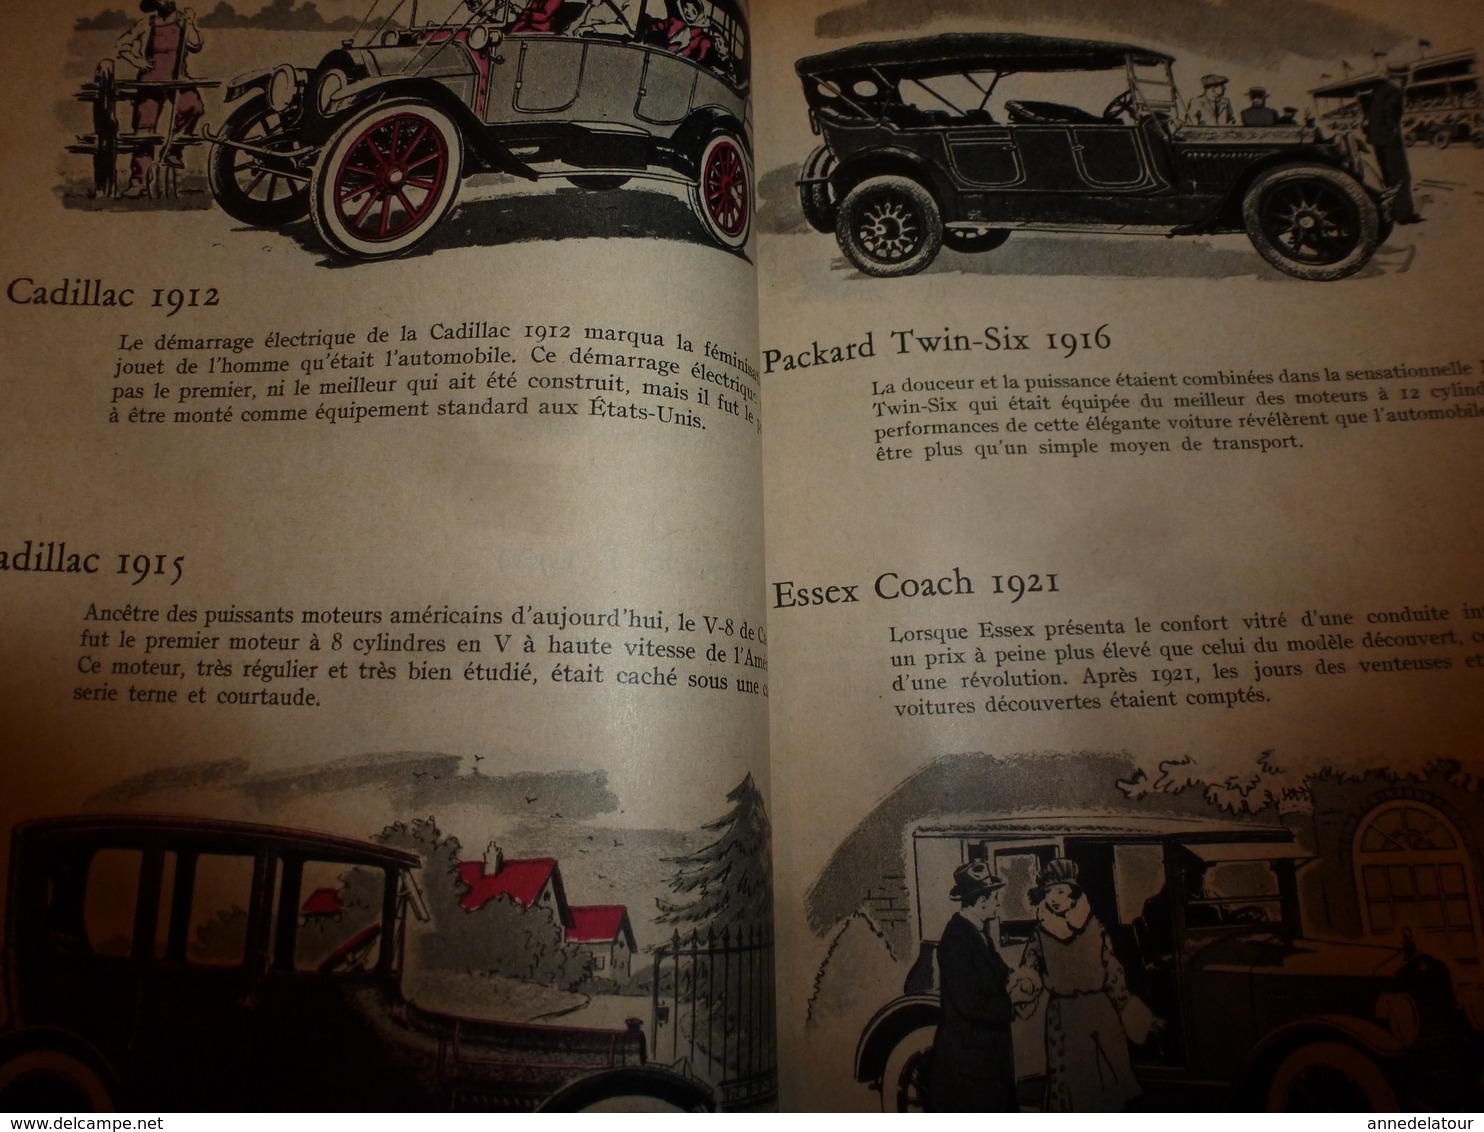 1958 MÉCANIQUE POPULAIRE: Les automobiles de 1800 à 1900 ( Ford,Thunderbird,Cadillac,Oldsmobile,Essex,Packard,etc)